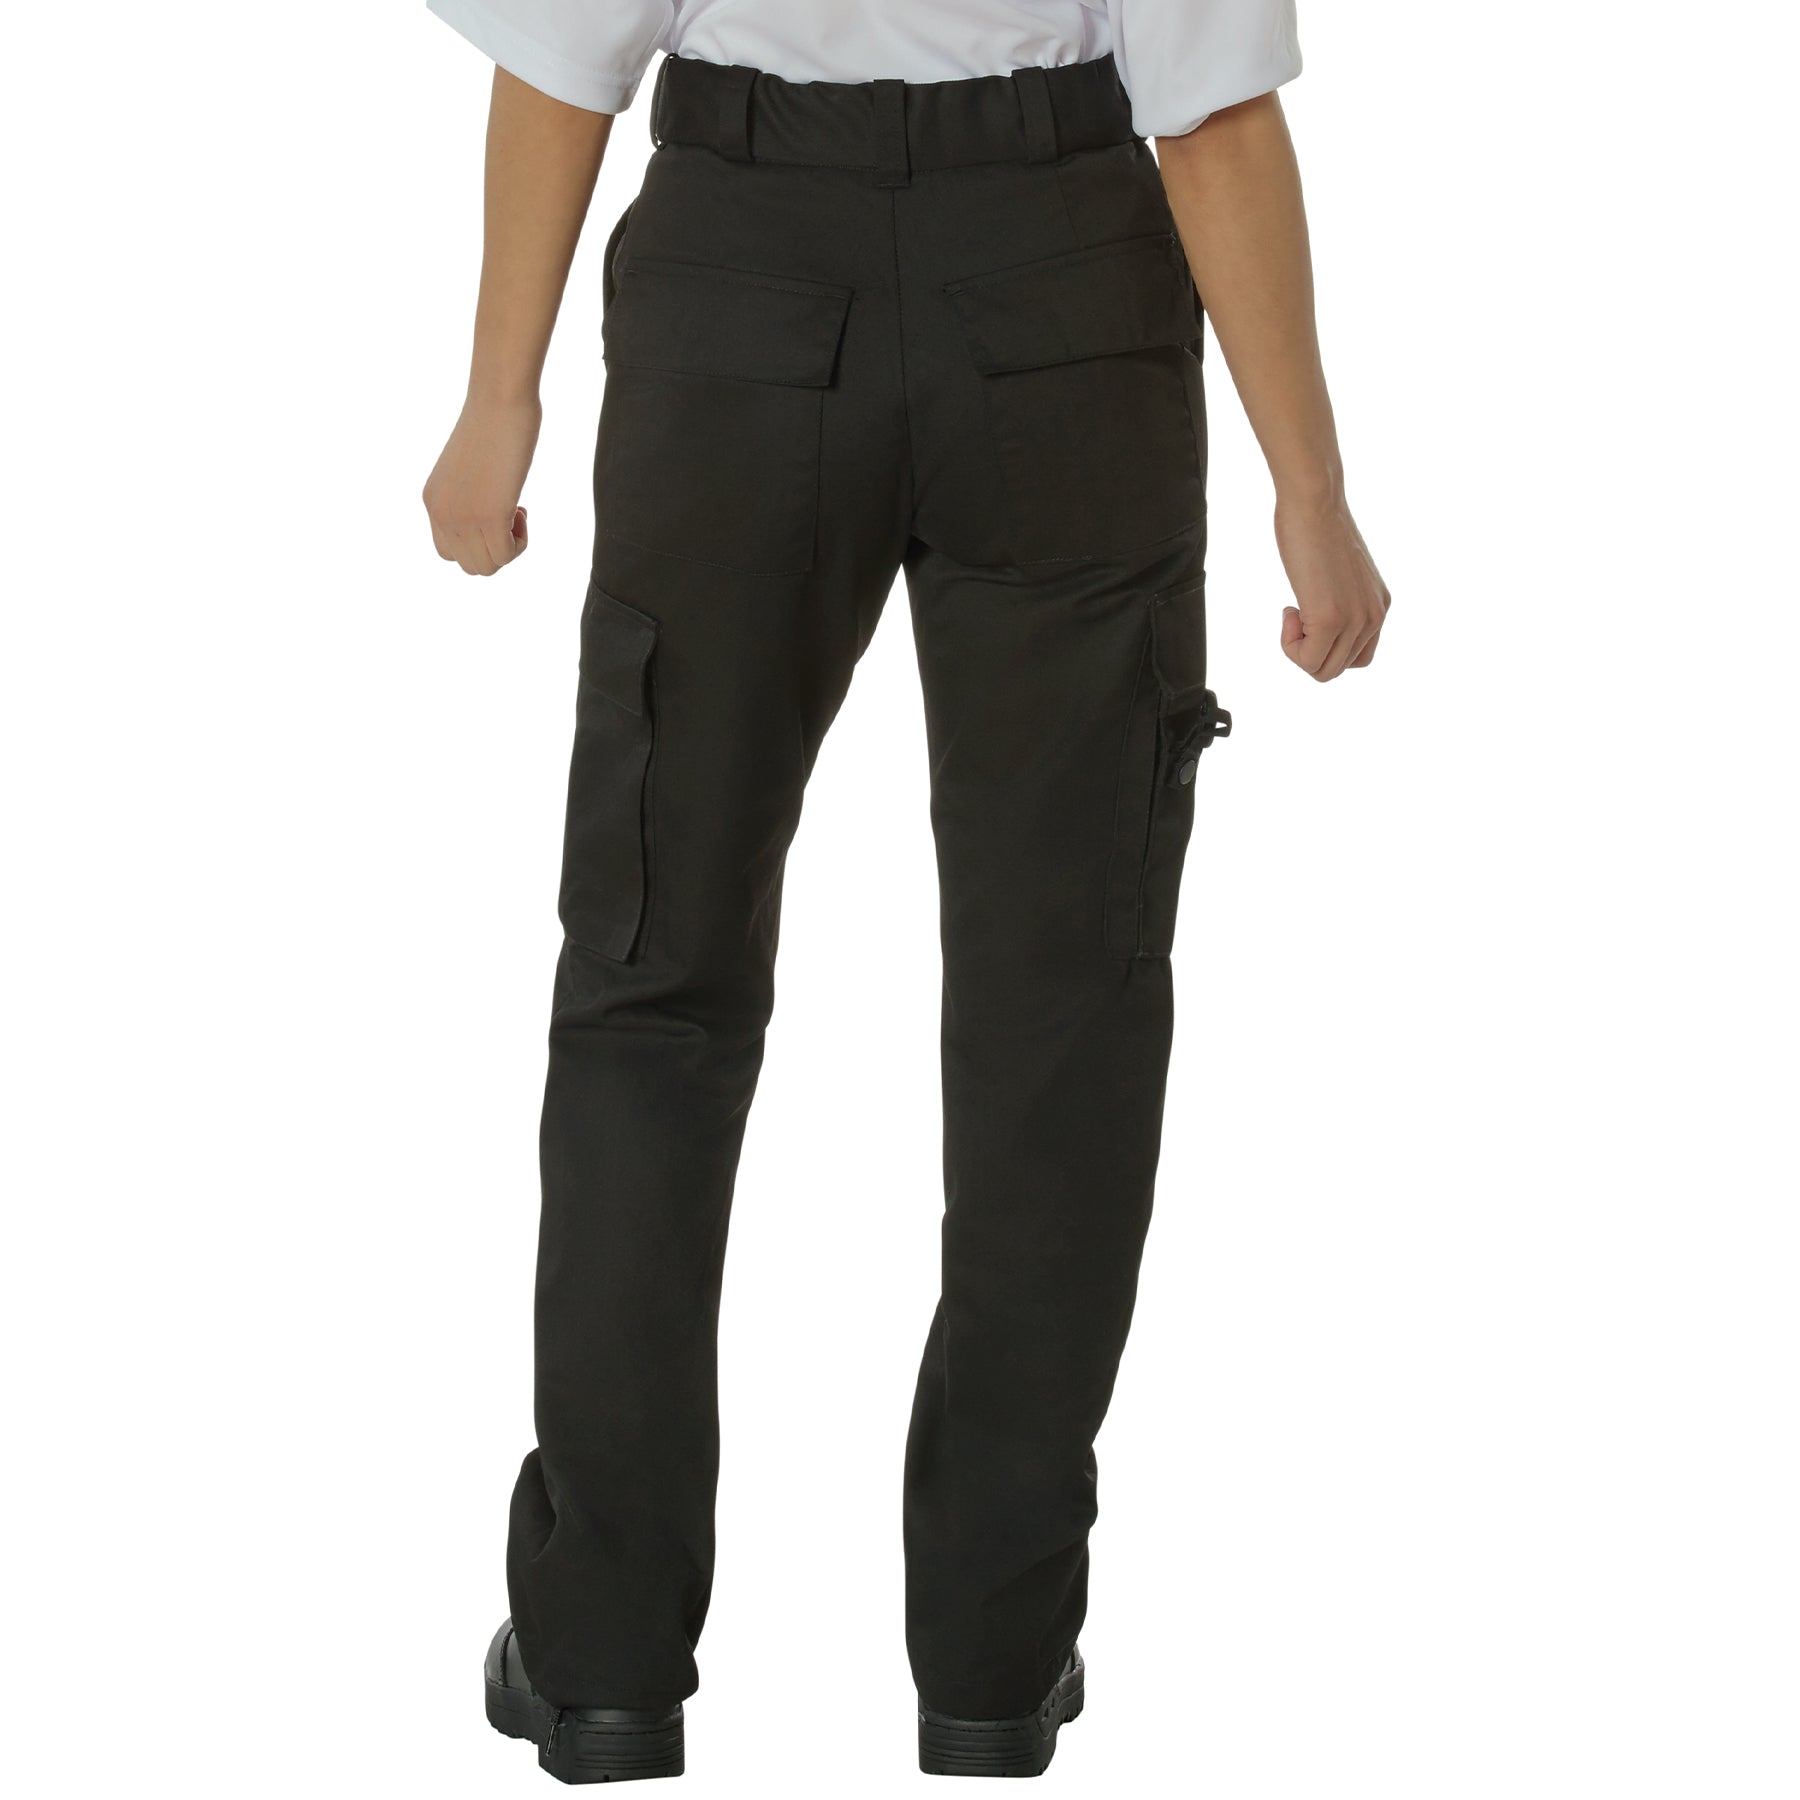 [Public Safety] Women's Poly/Cotton EMT Pants